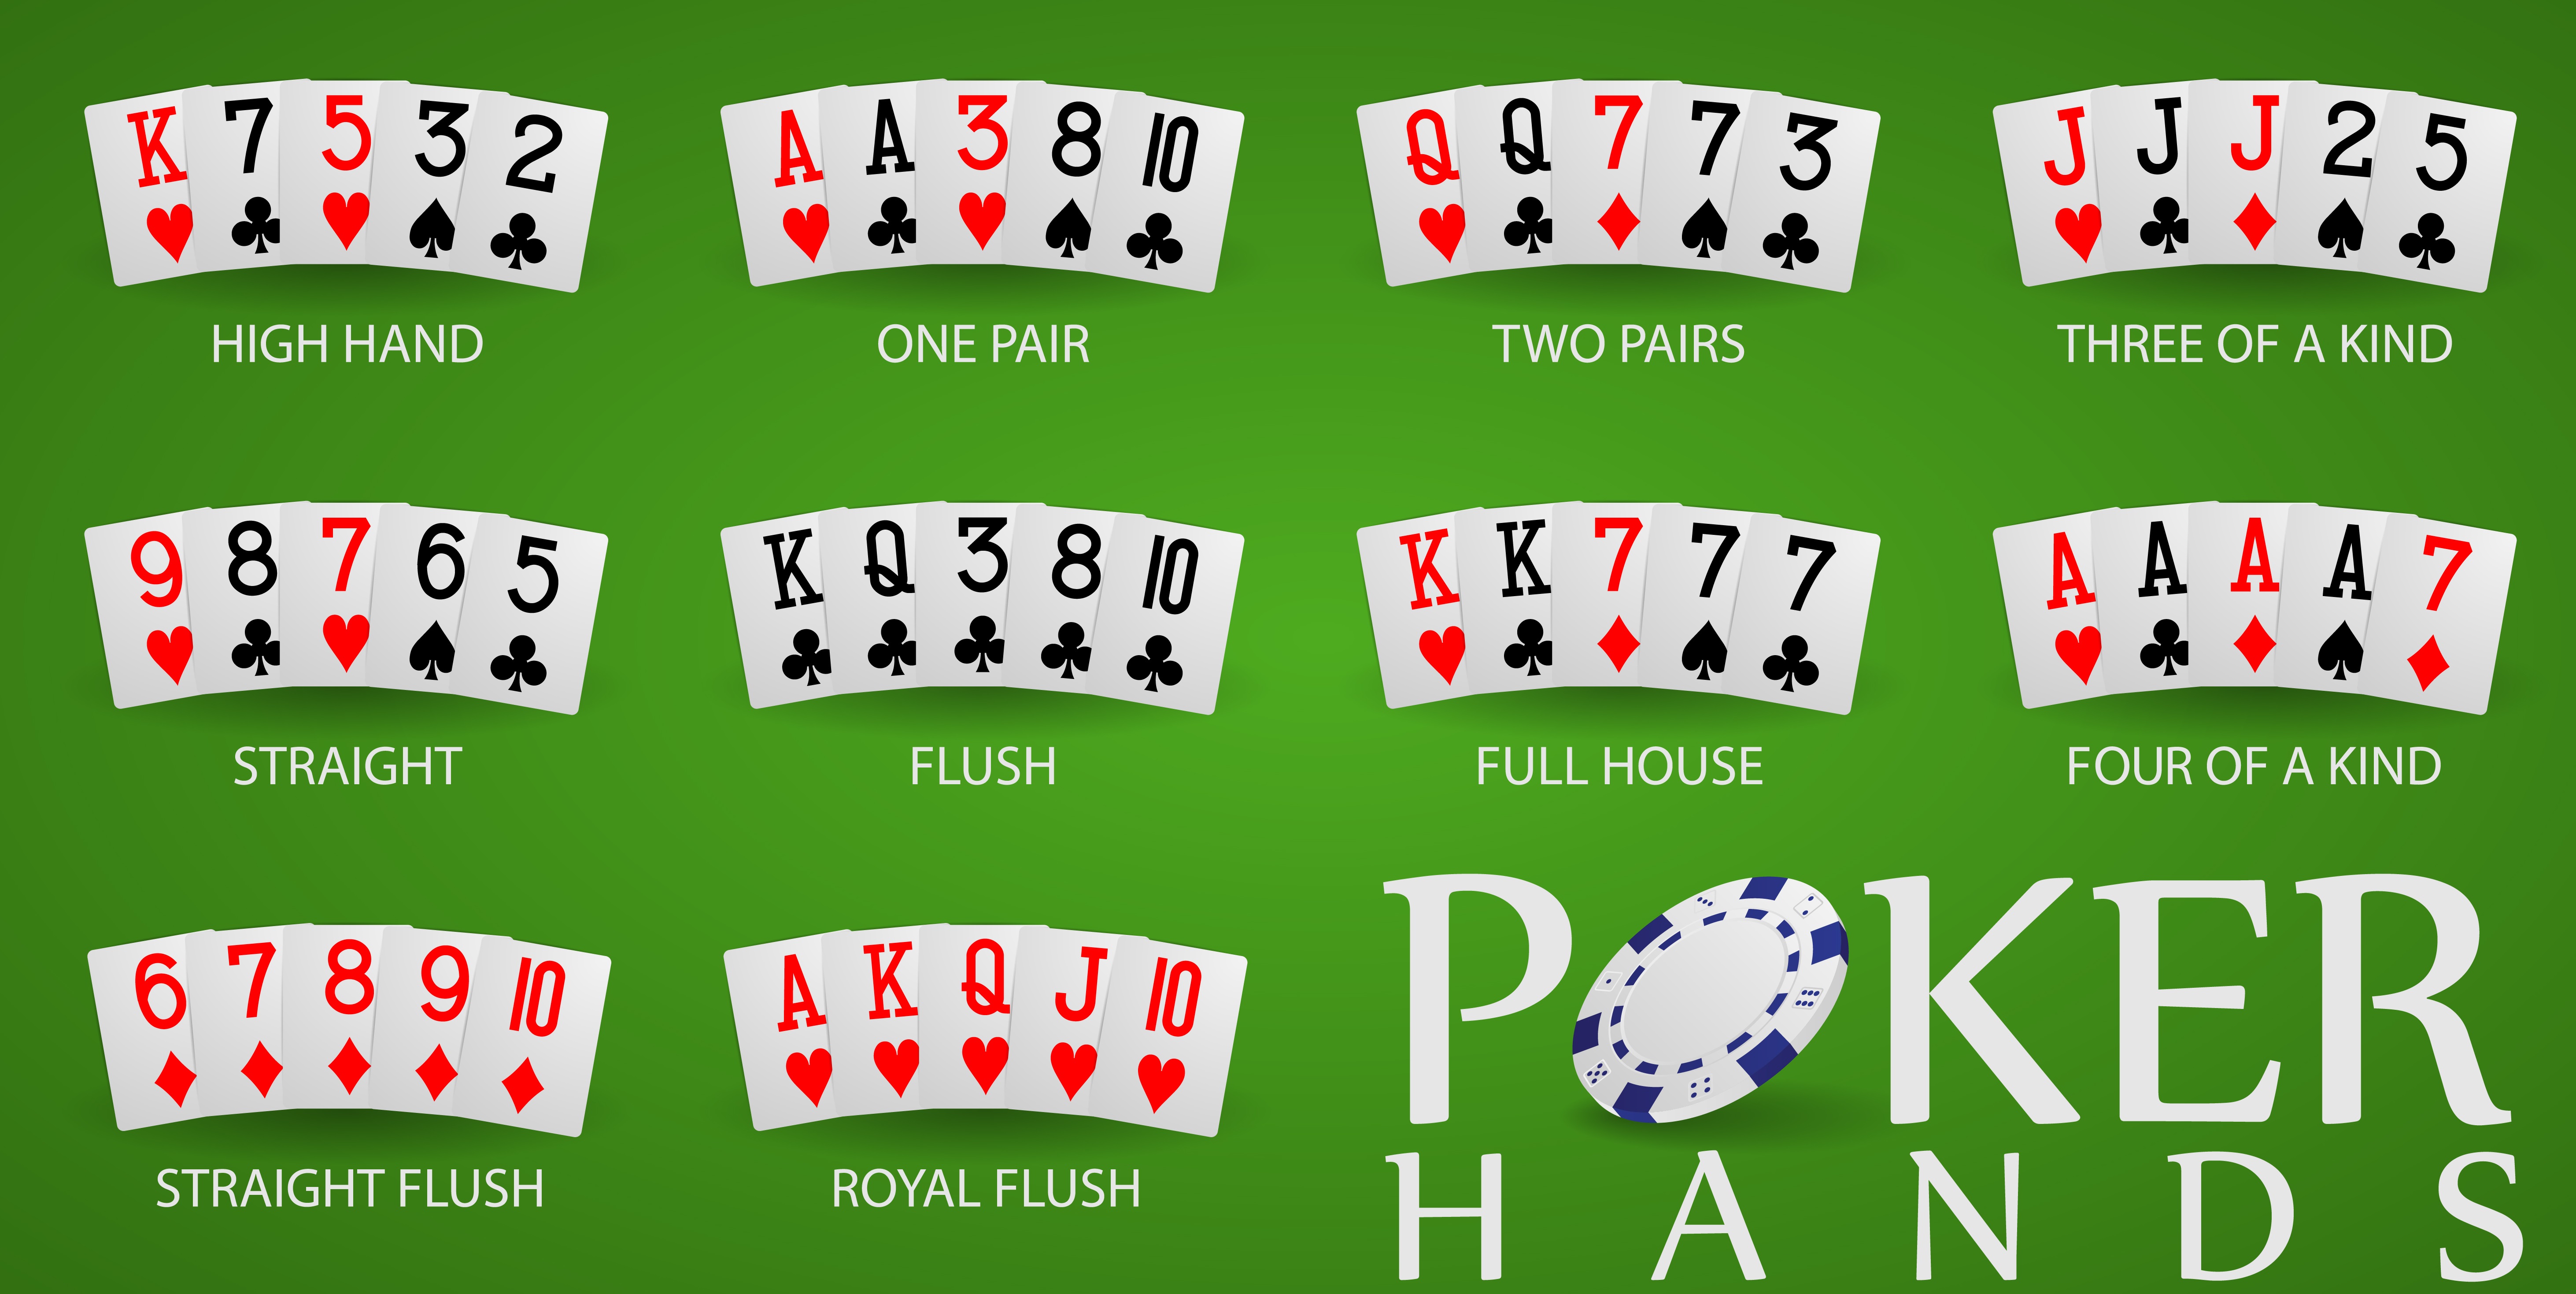 poker cheat sheet